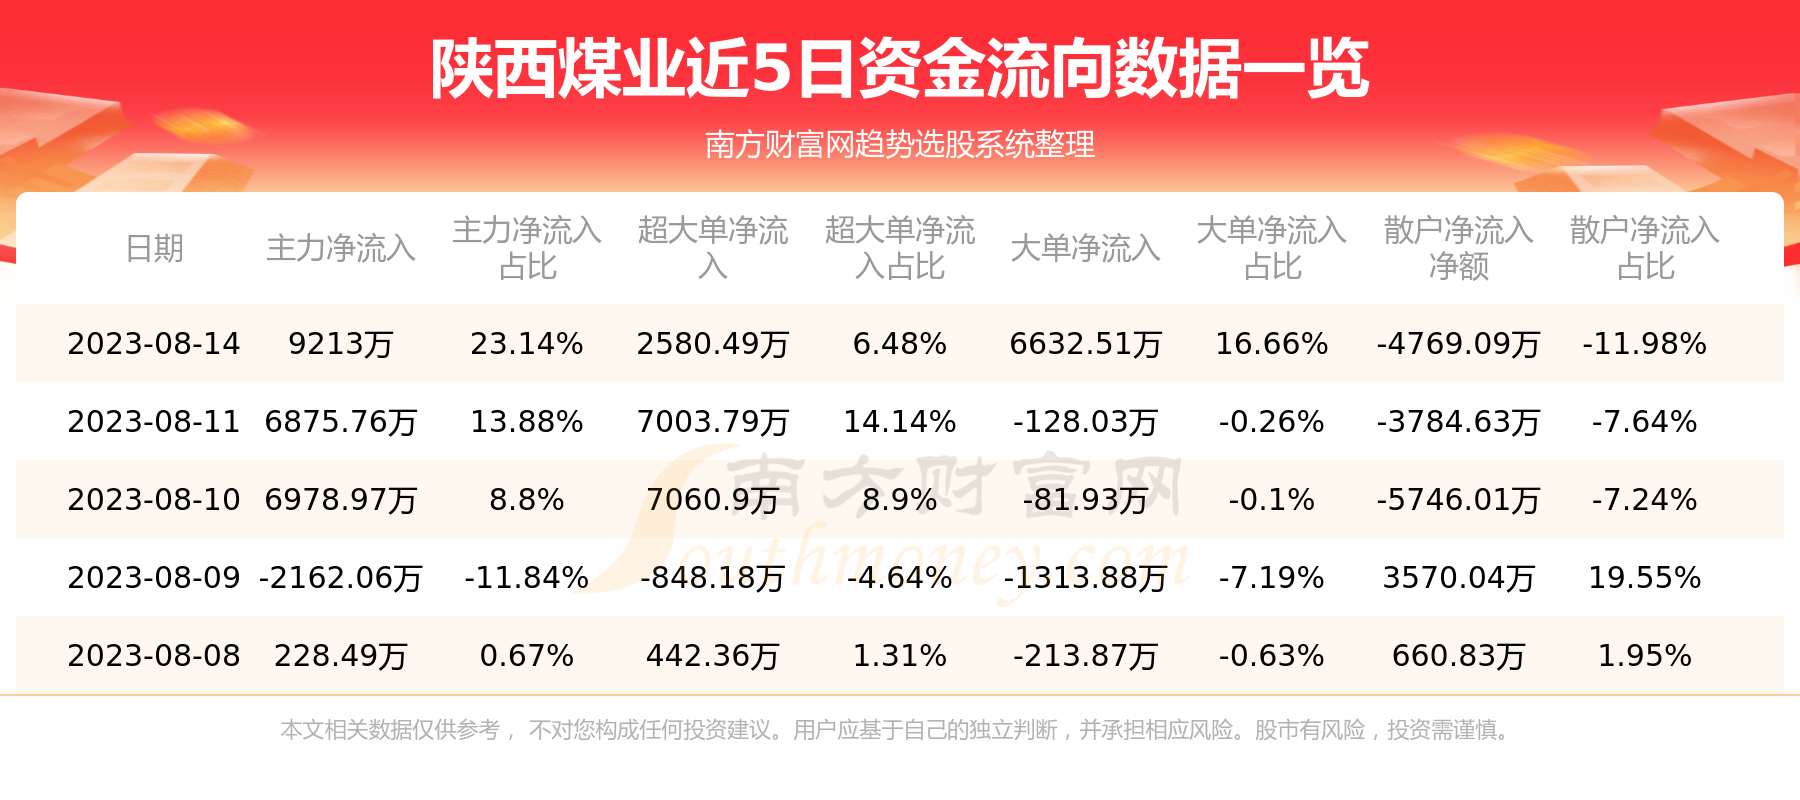 【8月14日资金流向】陕西煤业资金流向一览表